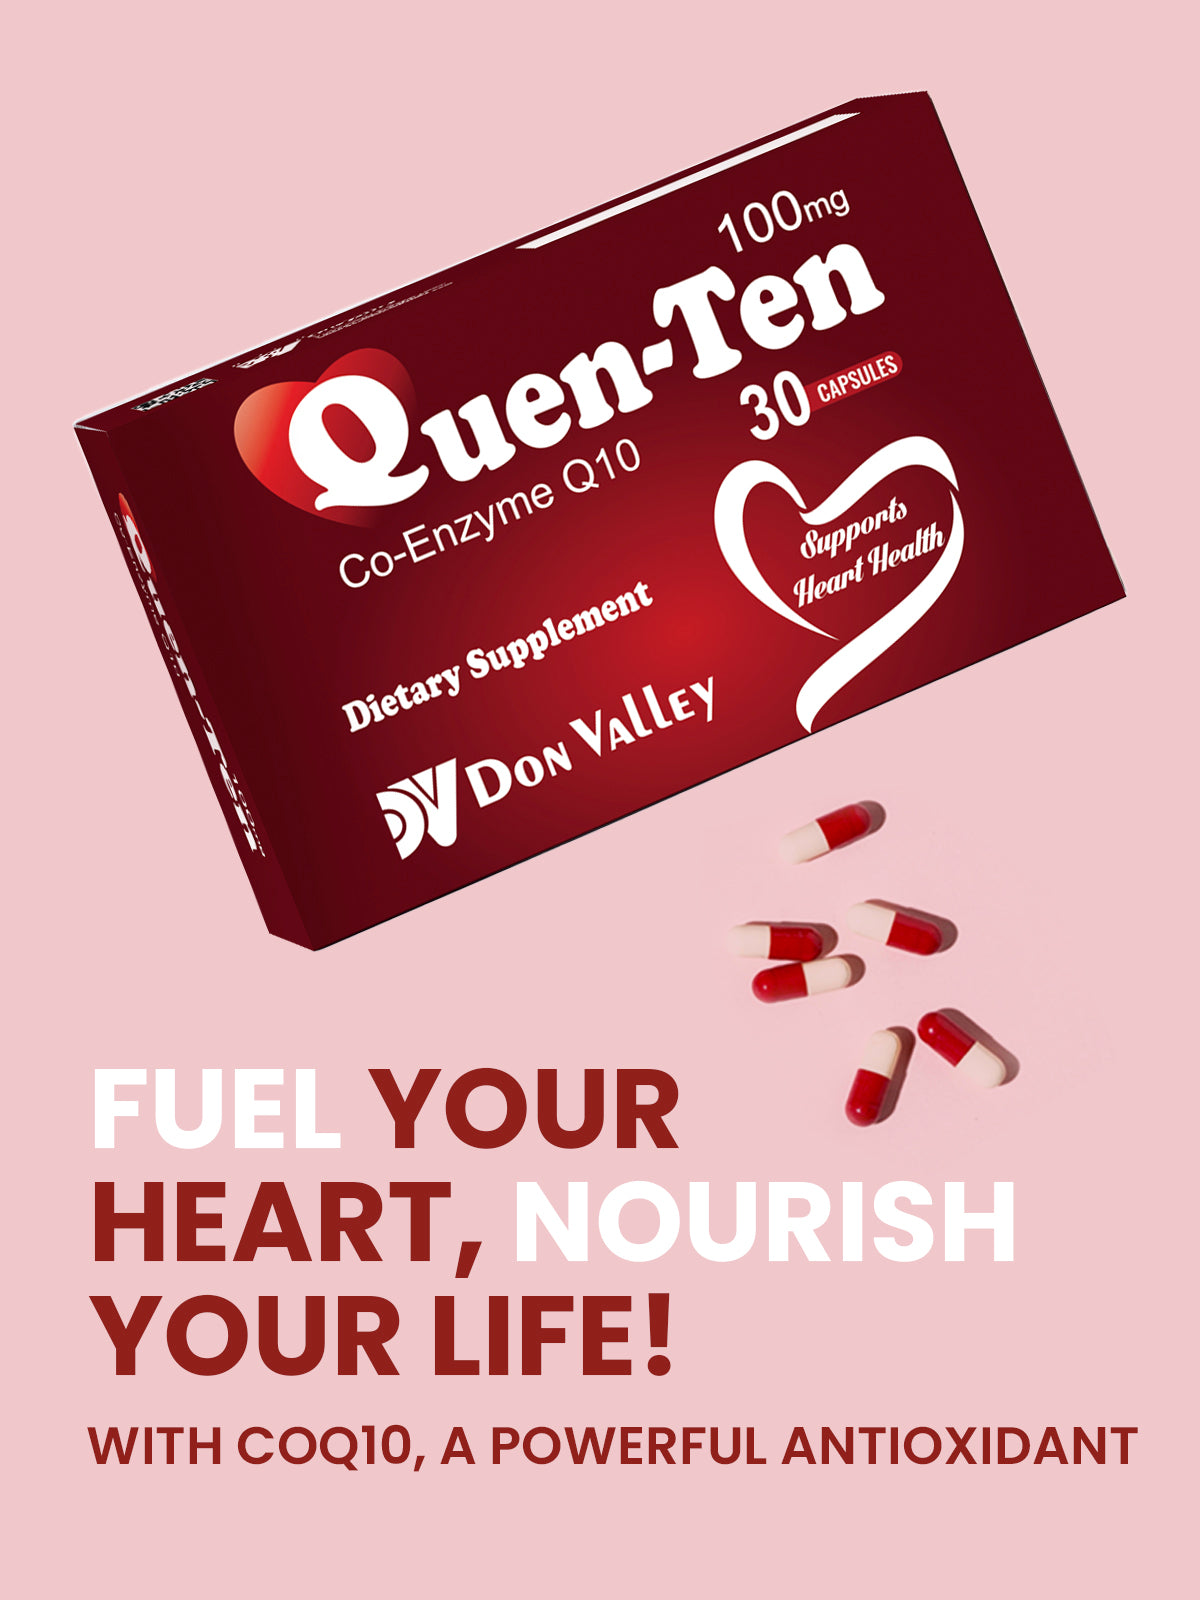 Quen-ten - Co-Enzyme Q10 - Dietary Supplement (100mg)